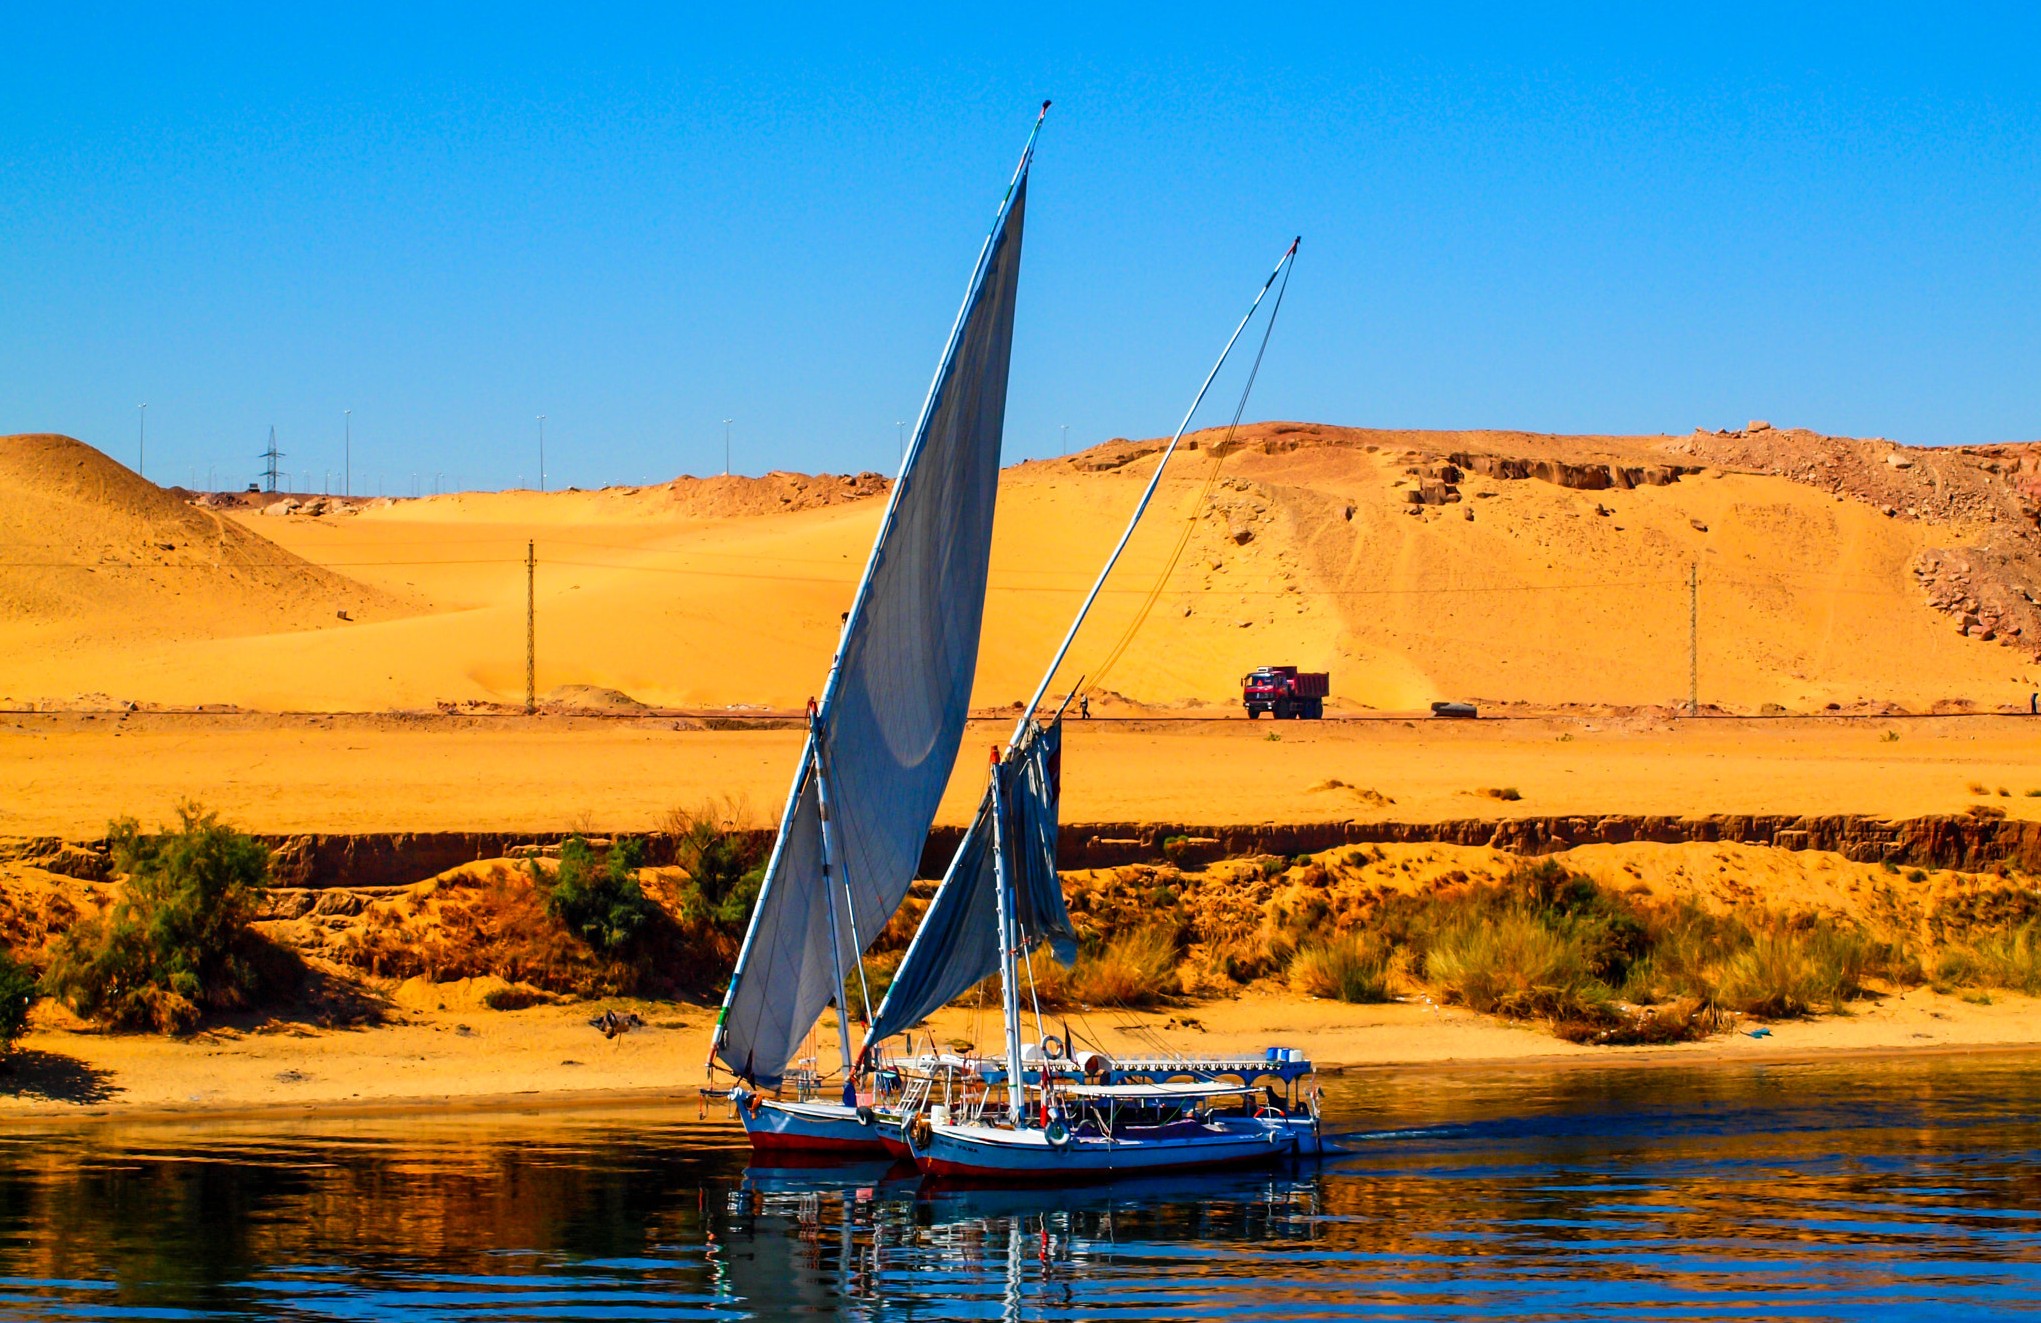 Luxor Felucca Boat Tours